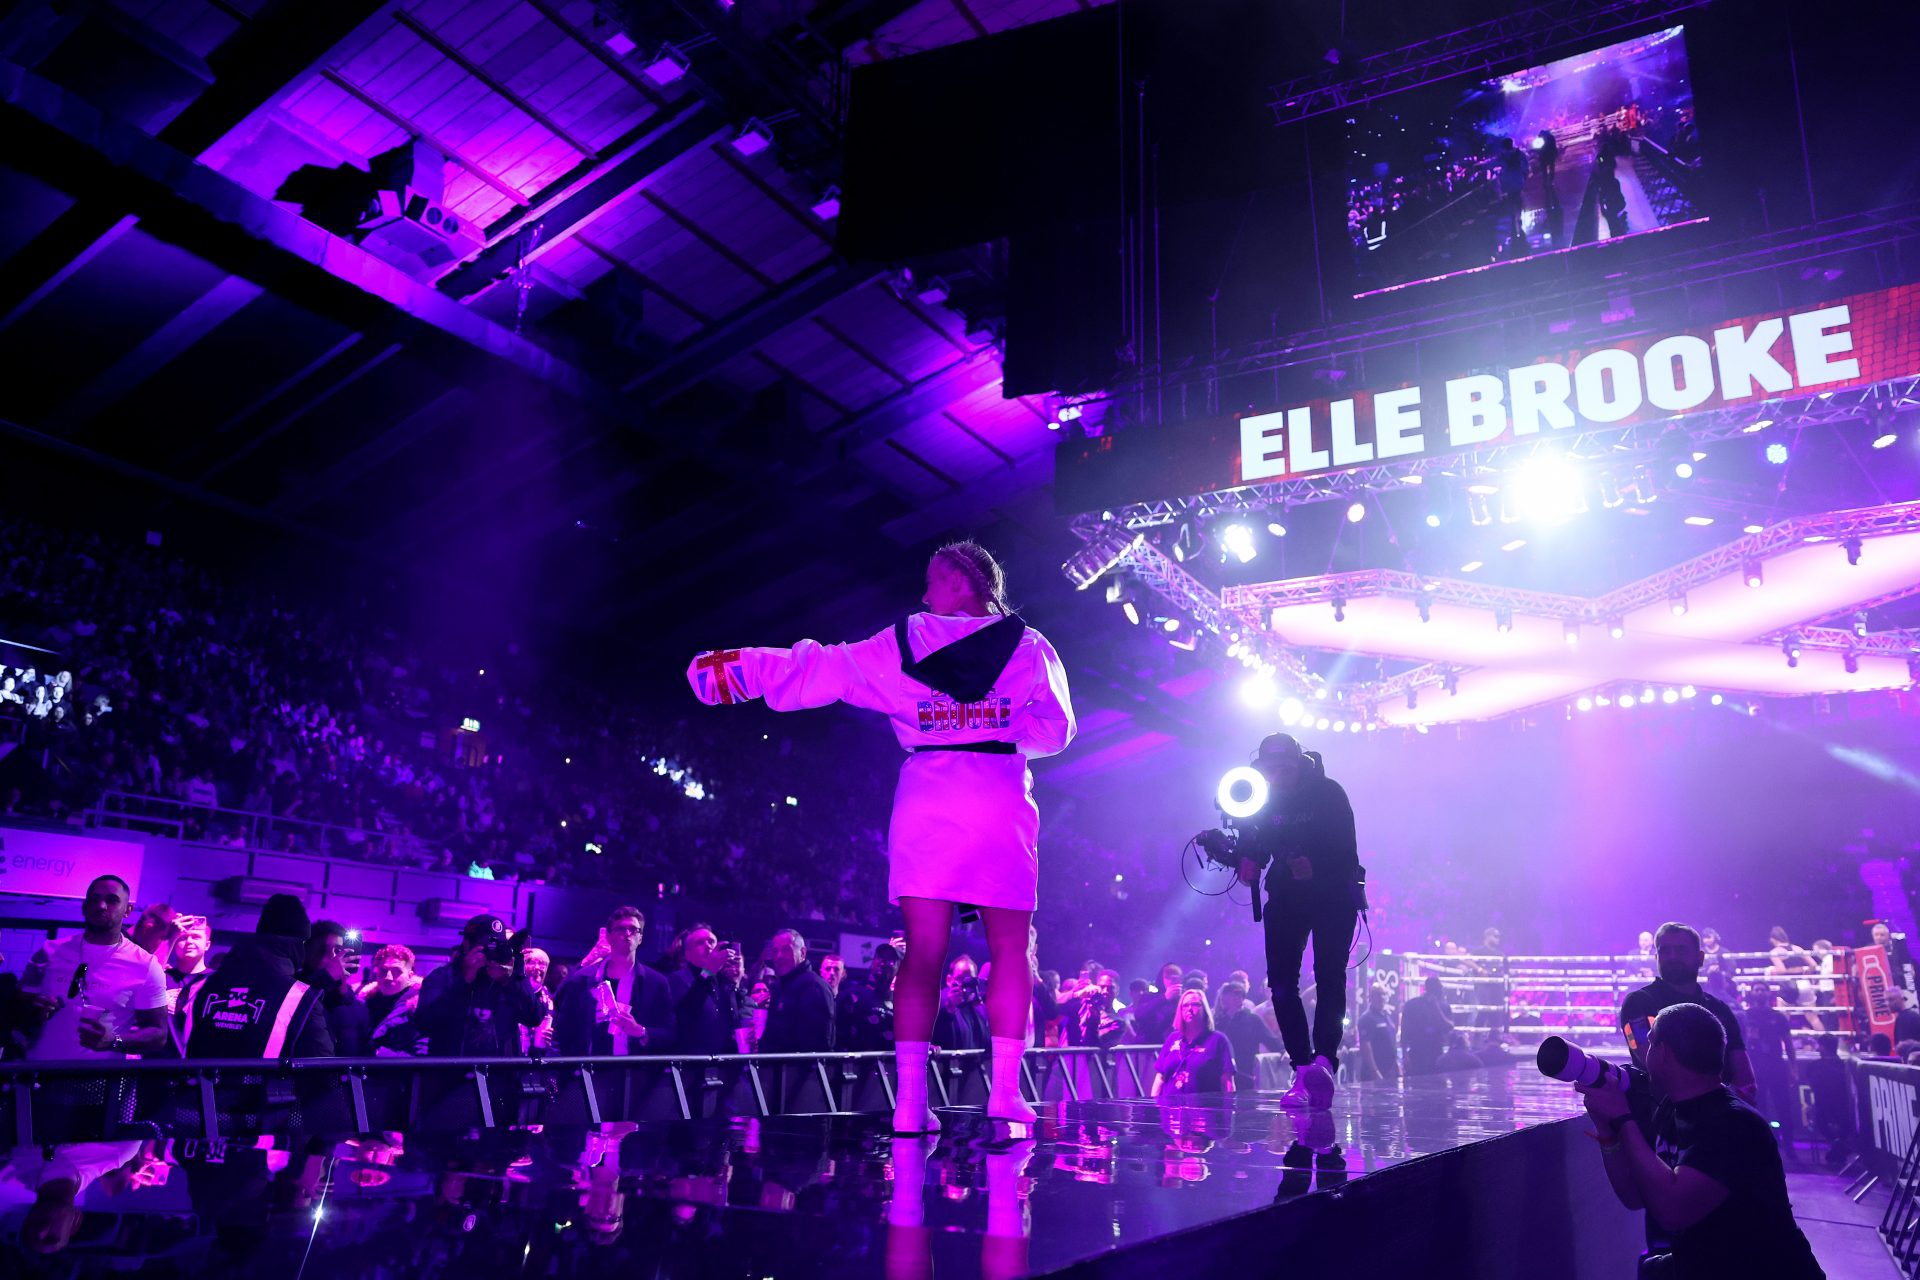 Who is Elle Brooke?